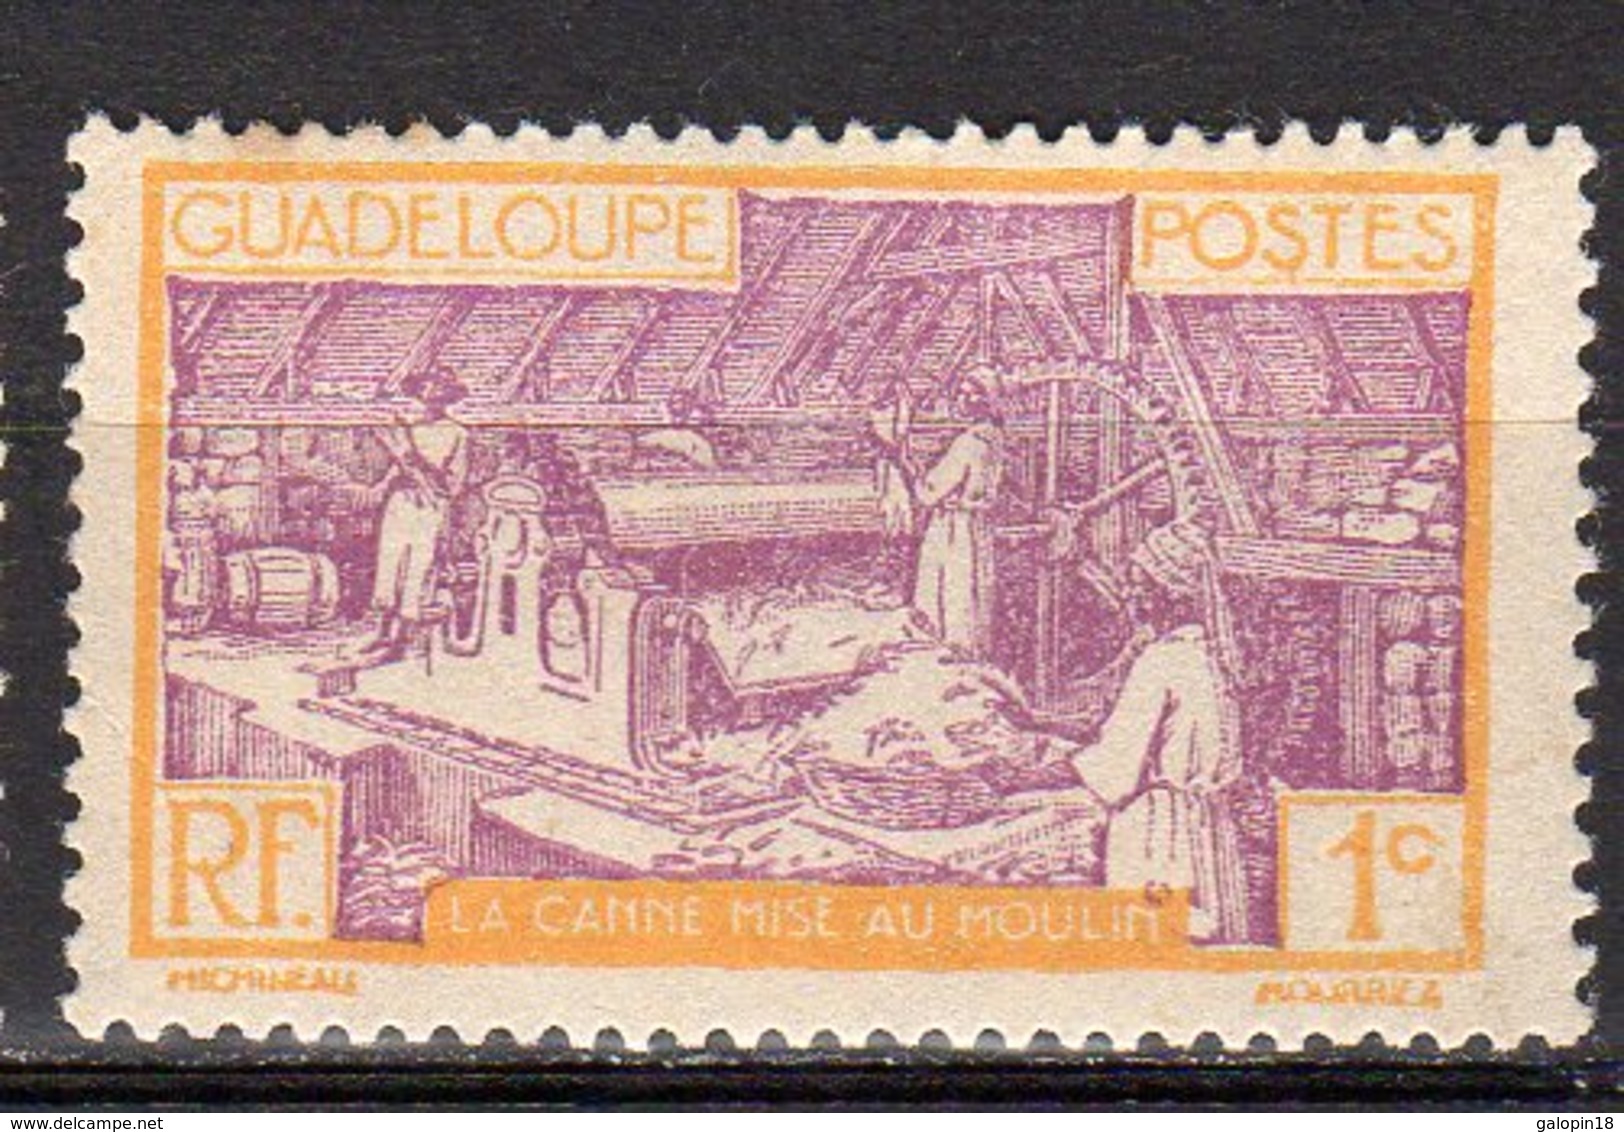 Gaudeloupe Yvert N° 99 Neuf Avec Charnière Point De Rouille Travail De La Canne à Sucre Lot 4-183 - Nuovi